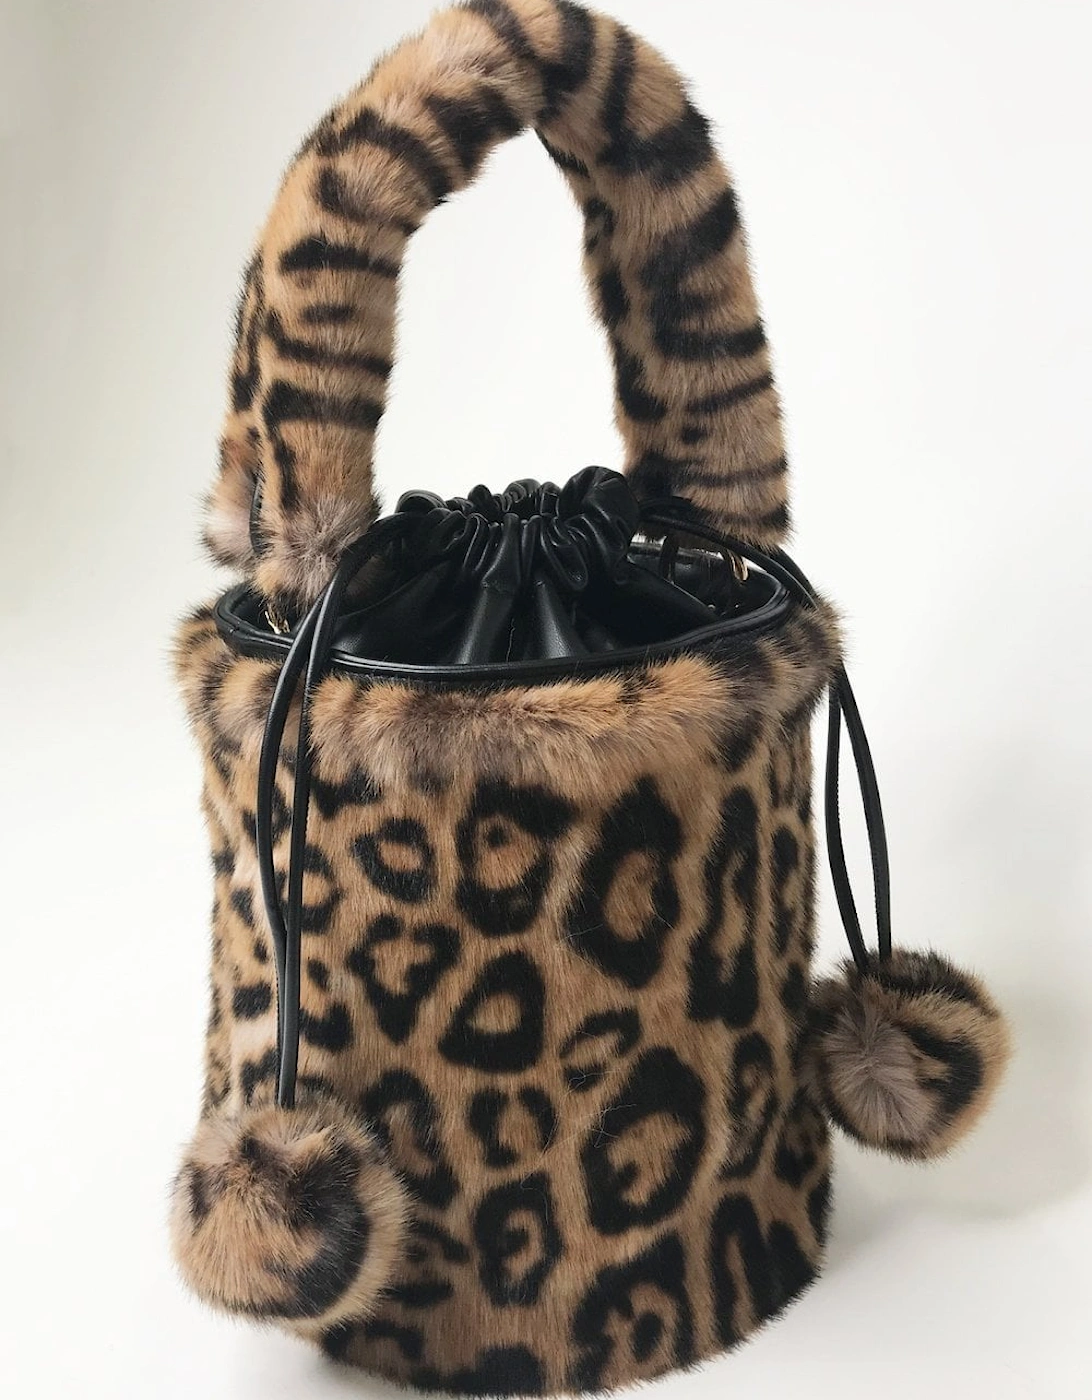 Leopard Print Faux Fur Kate Bag